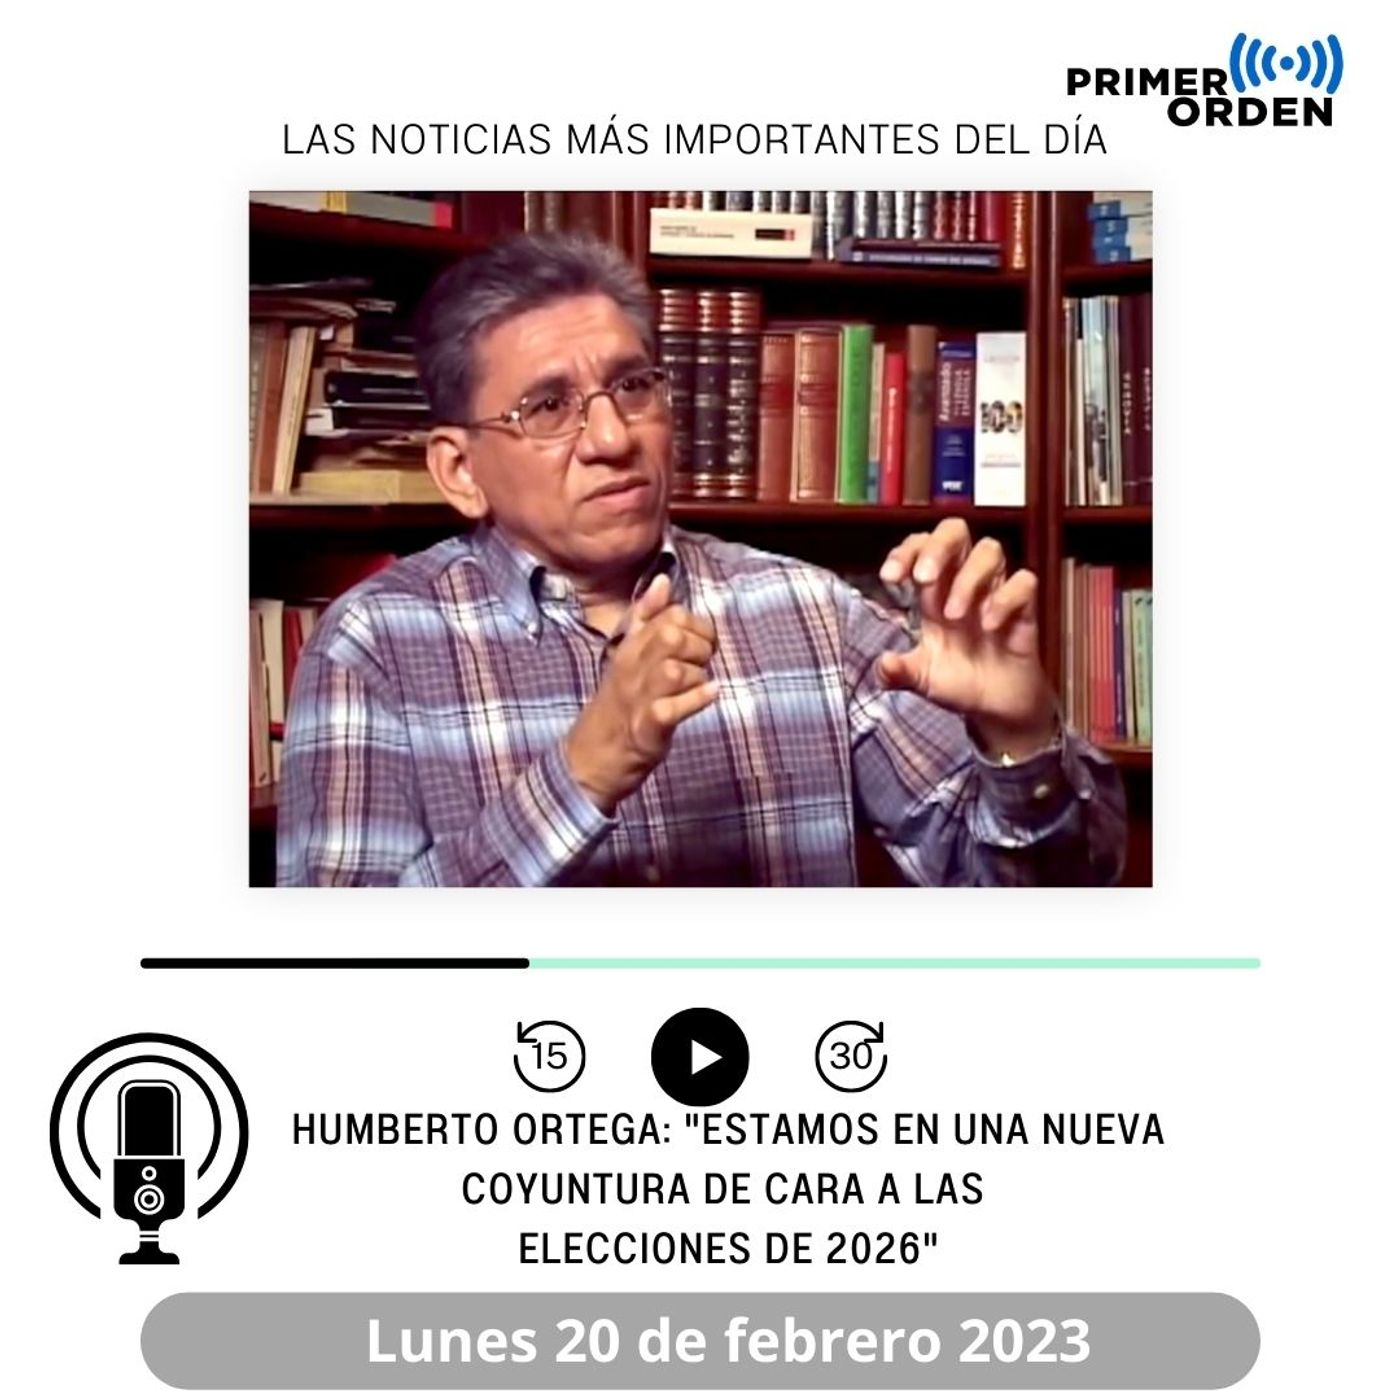 Humberto Ortega: "Estamos en una nueva coyuntura de cara a las elecciones de 2026"